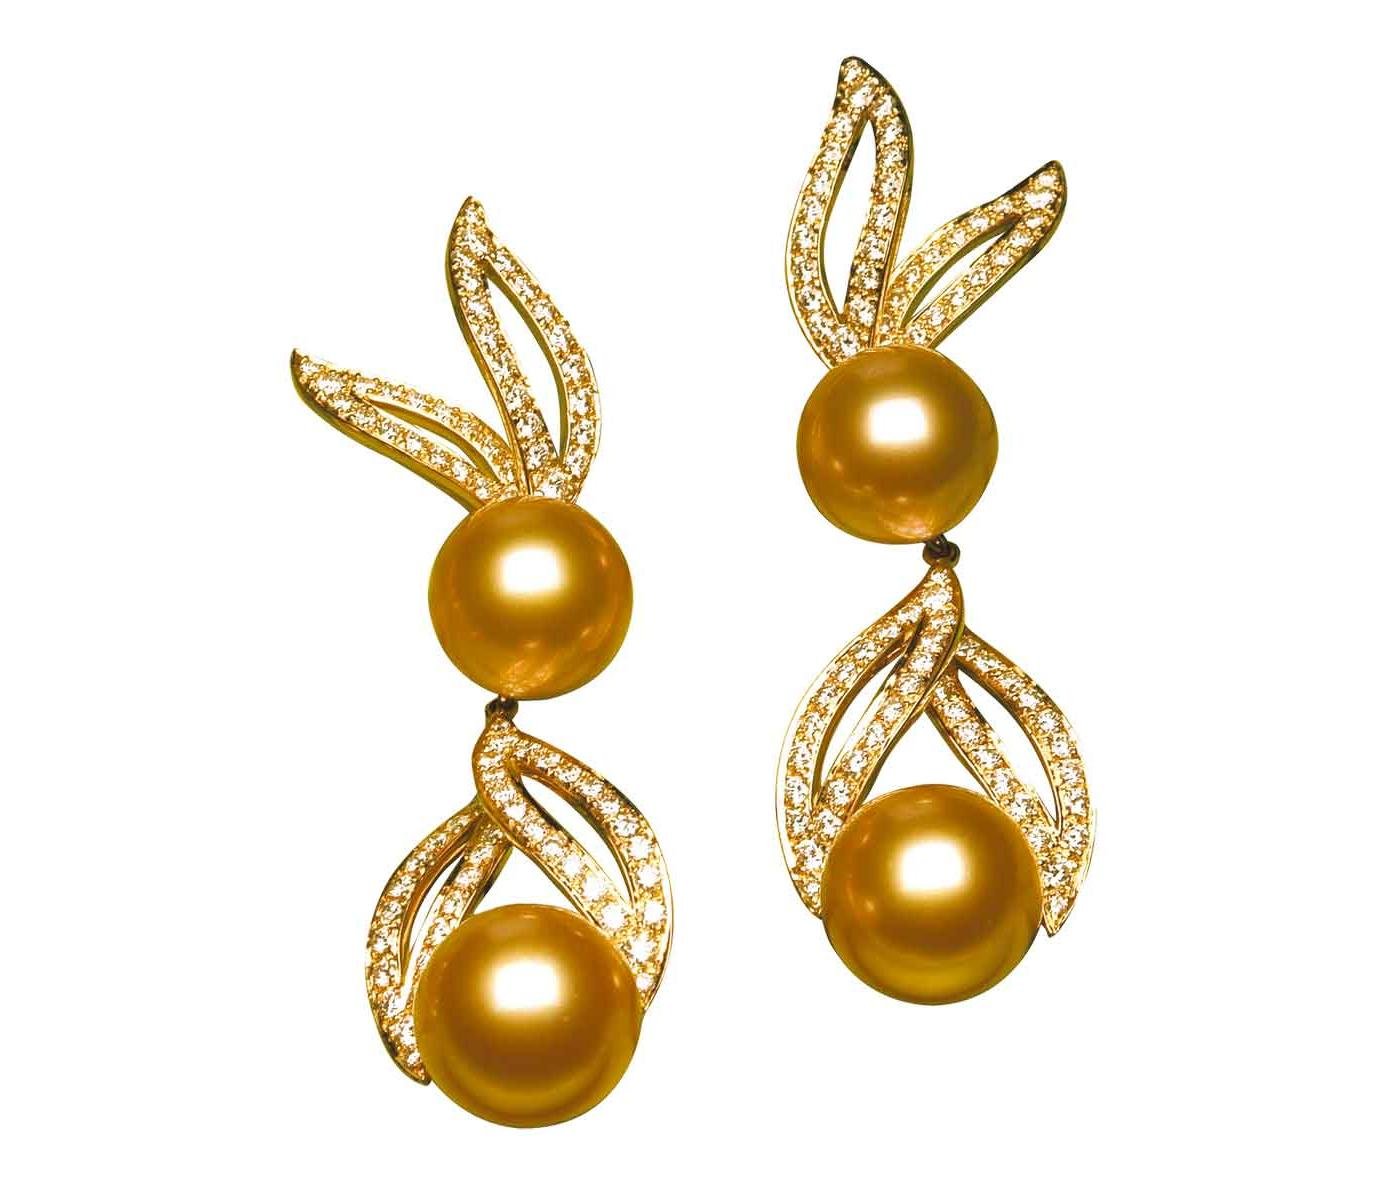 Earrings by Jewelmer